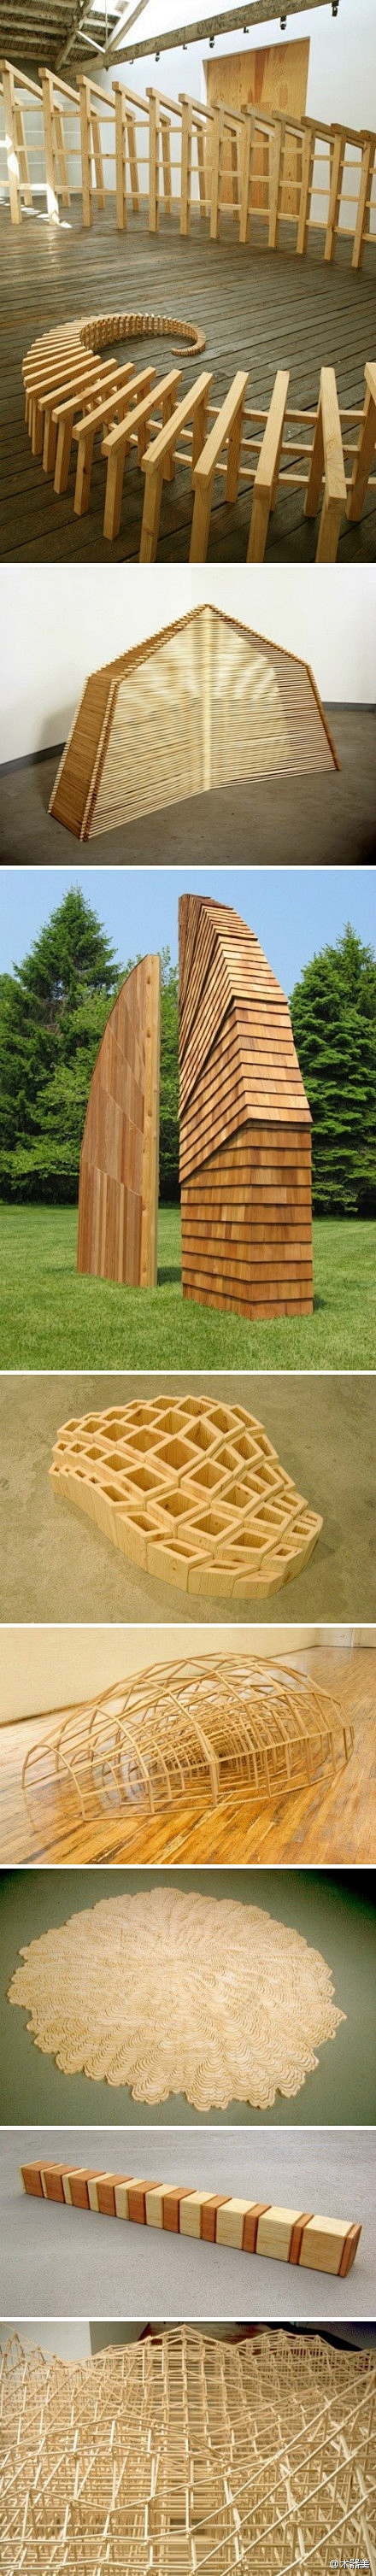 
艺术具有无限可能，一组令人惊叹的木结构...